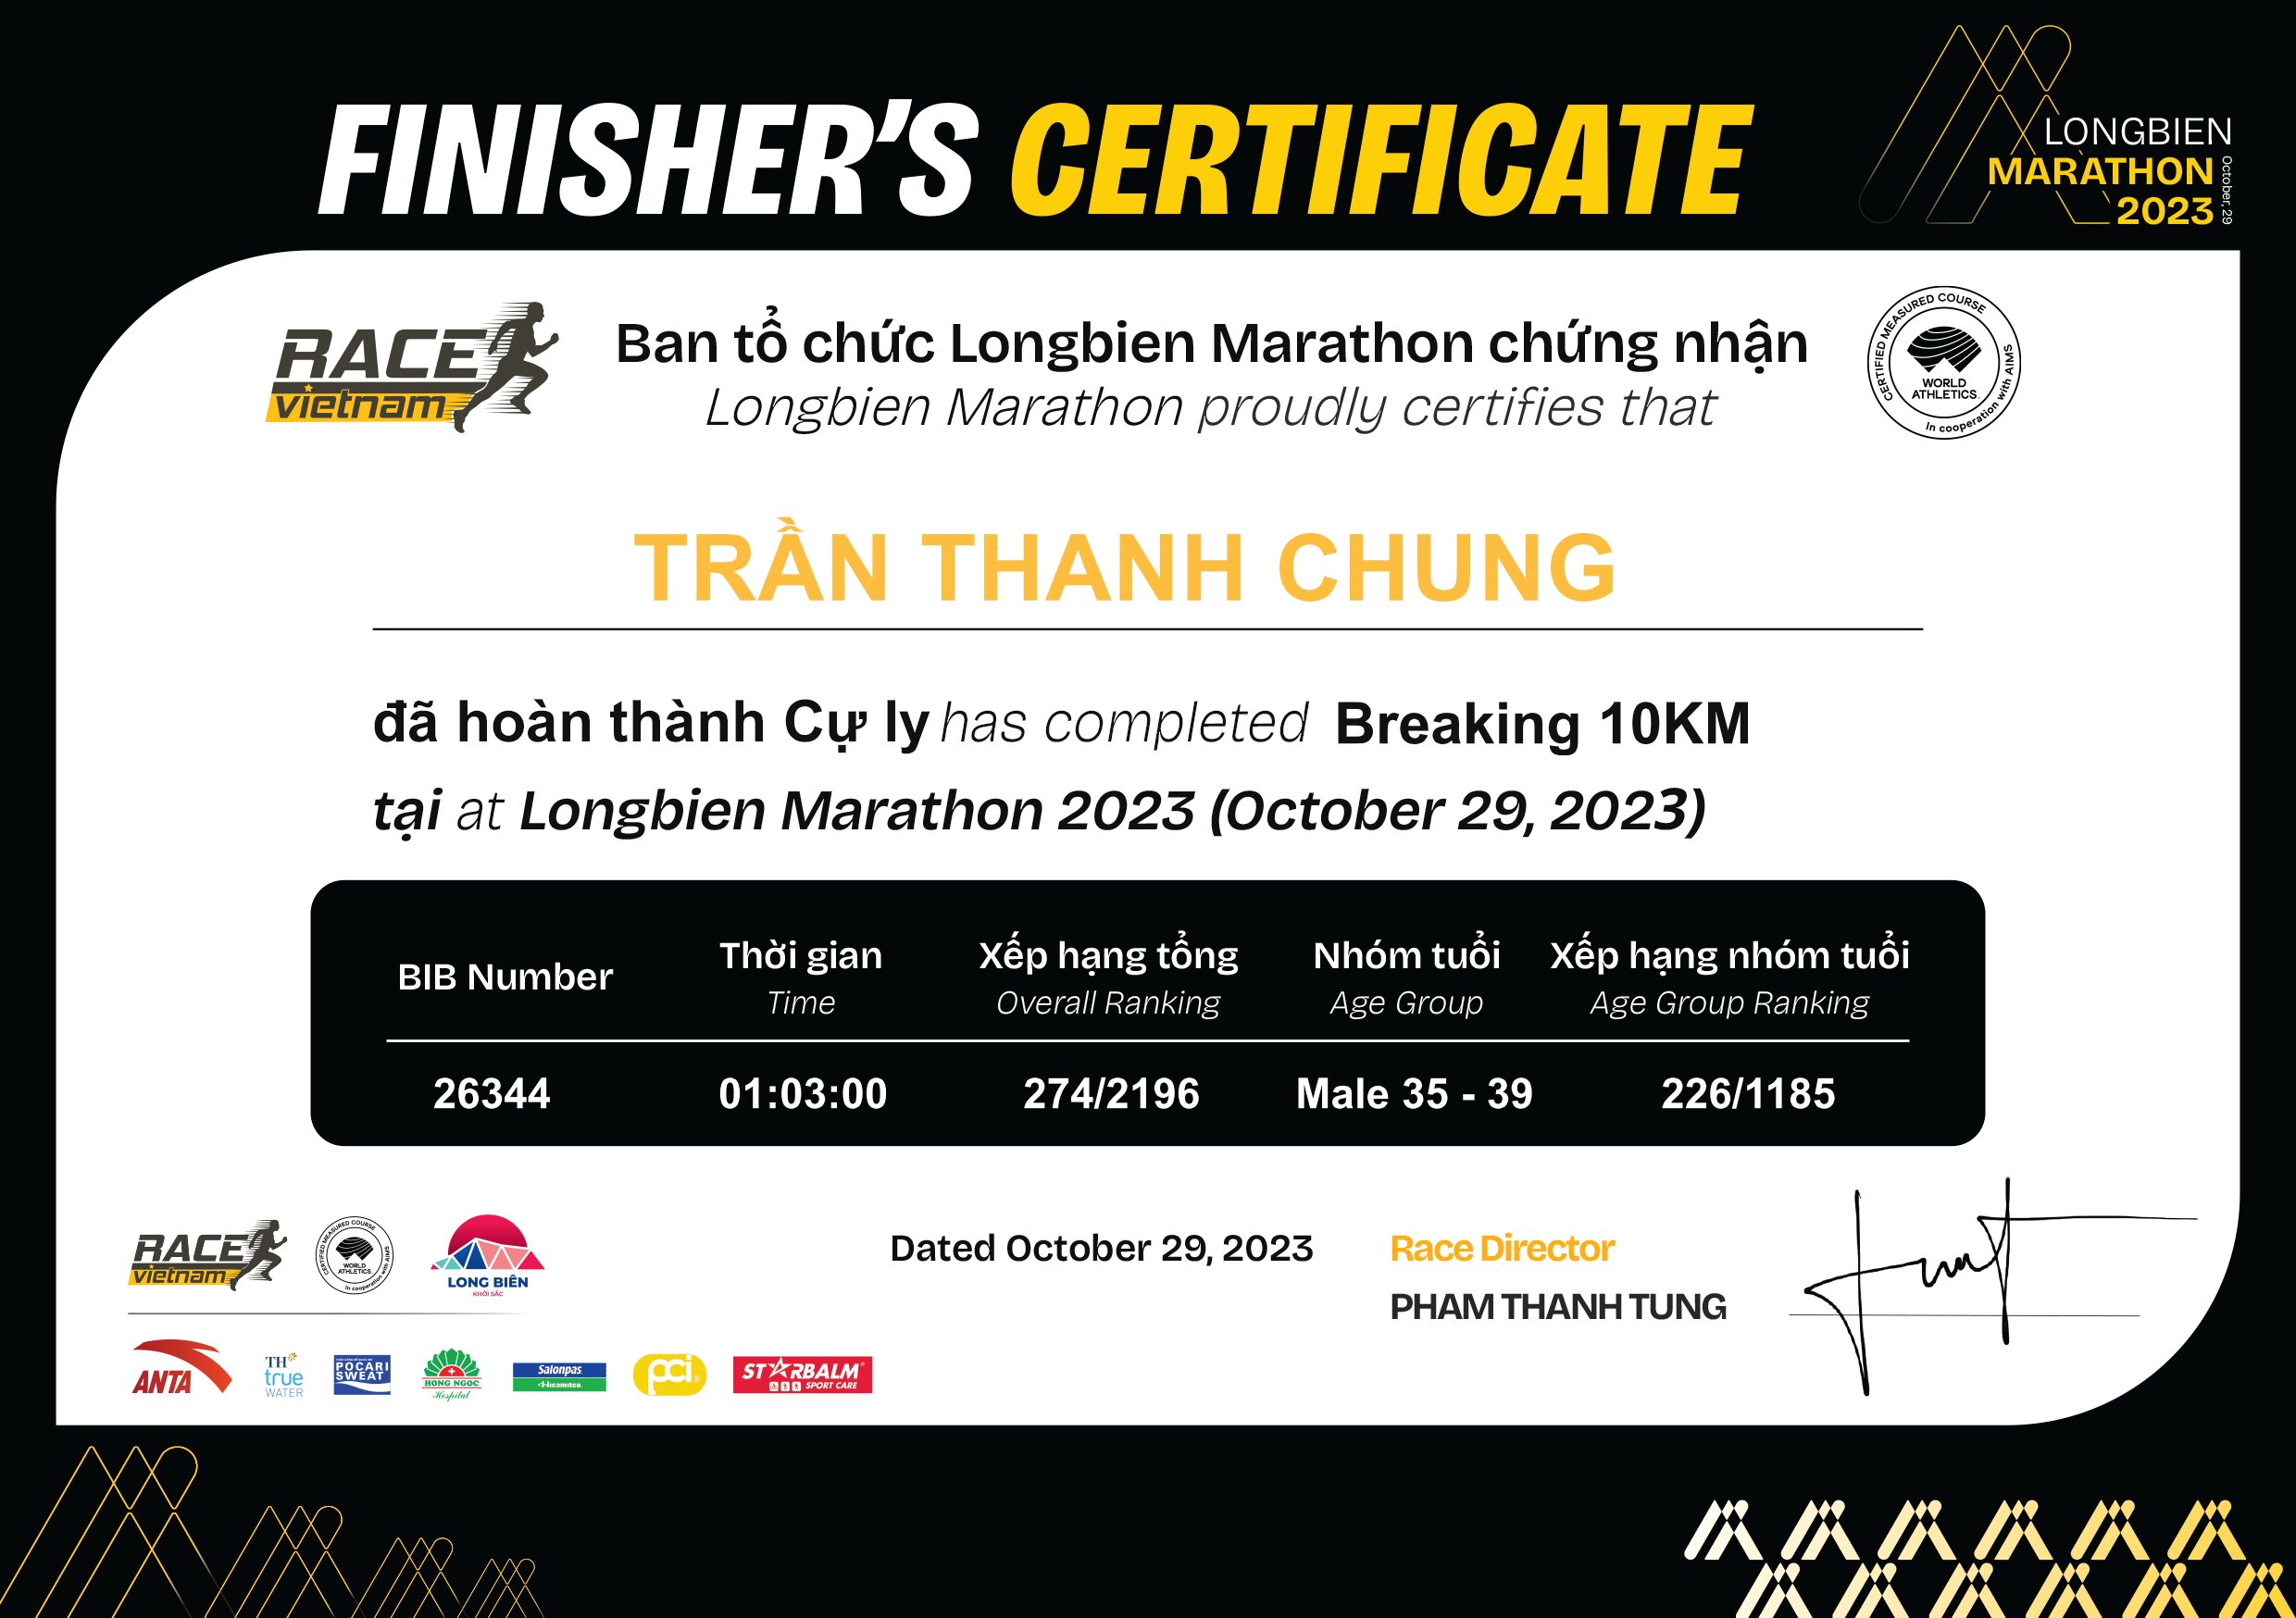 26344 - Trần Thanh Chung